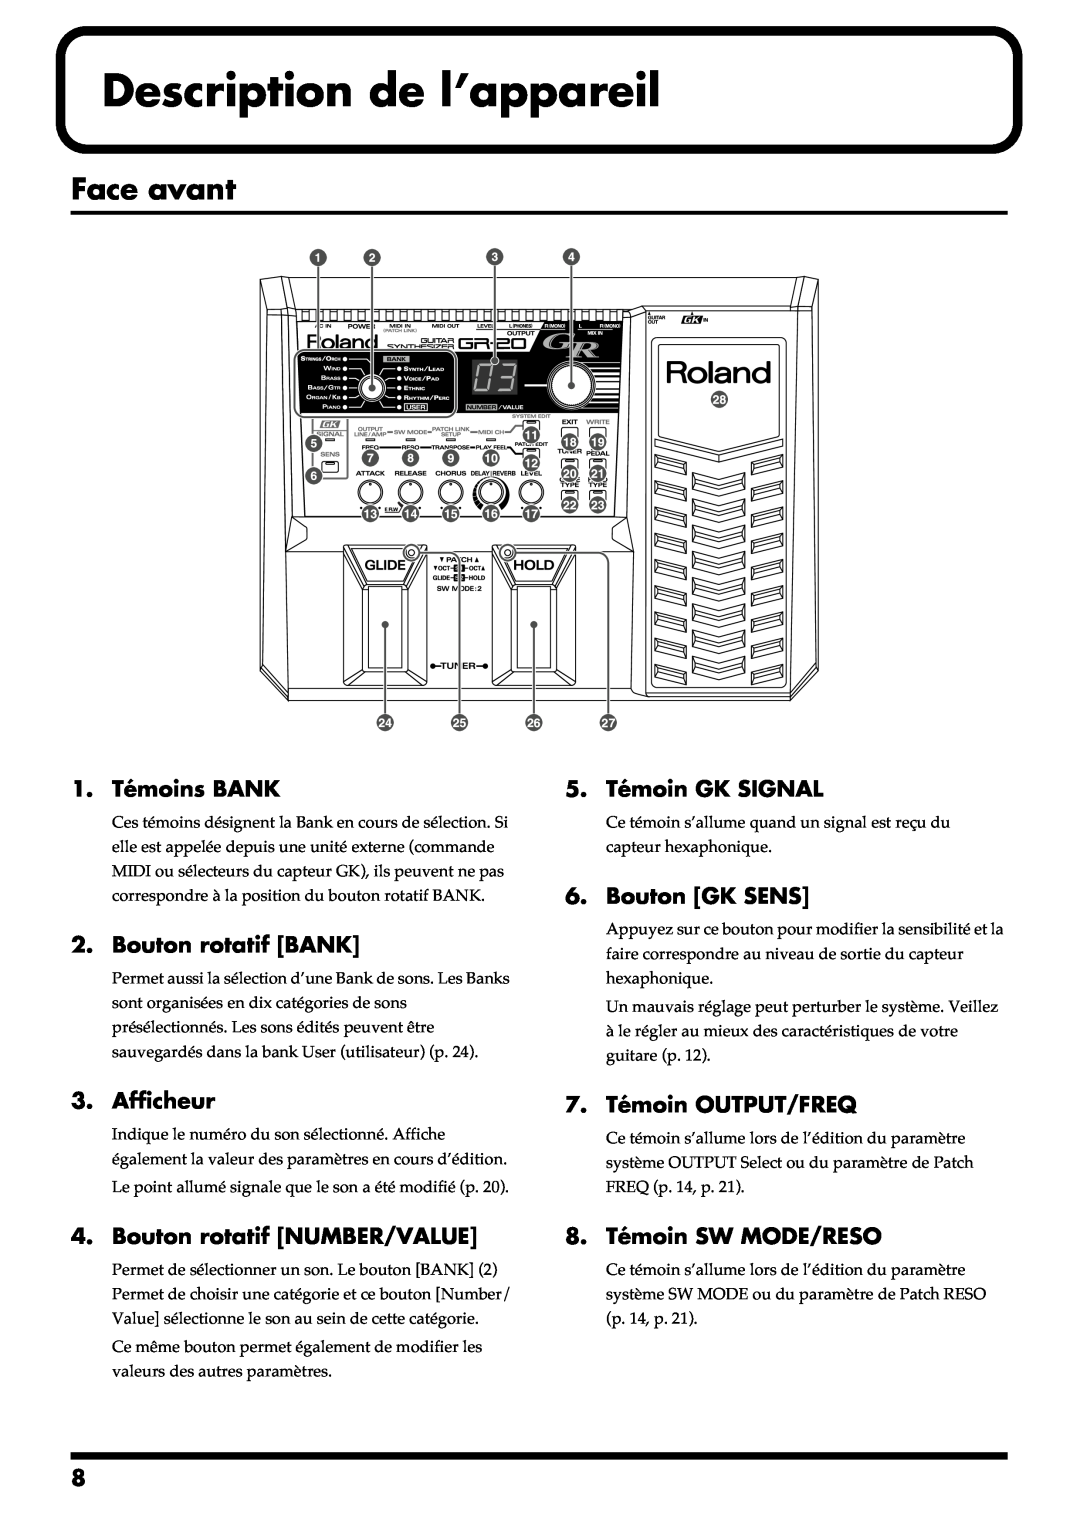 Roland GR-20 manual Description de l’appareil, Face avant 